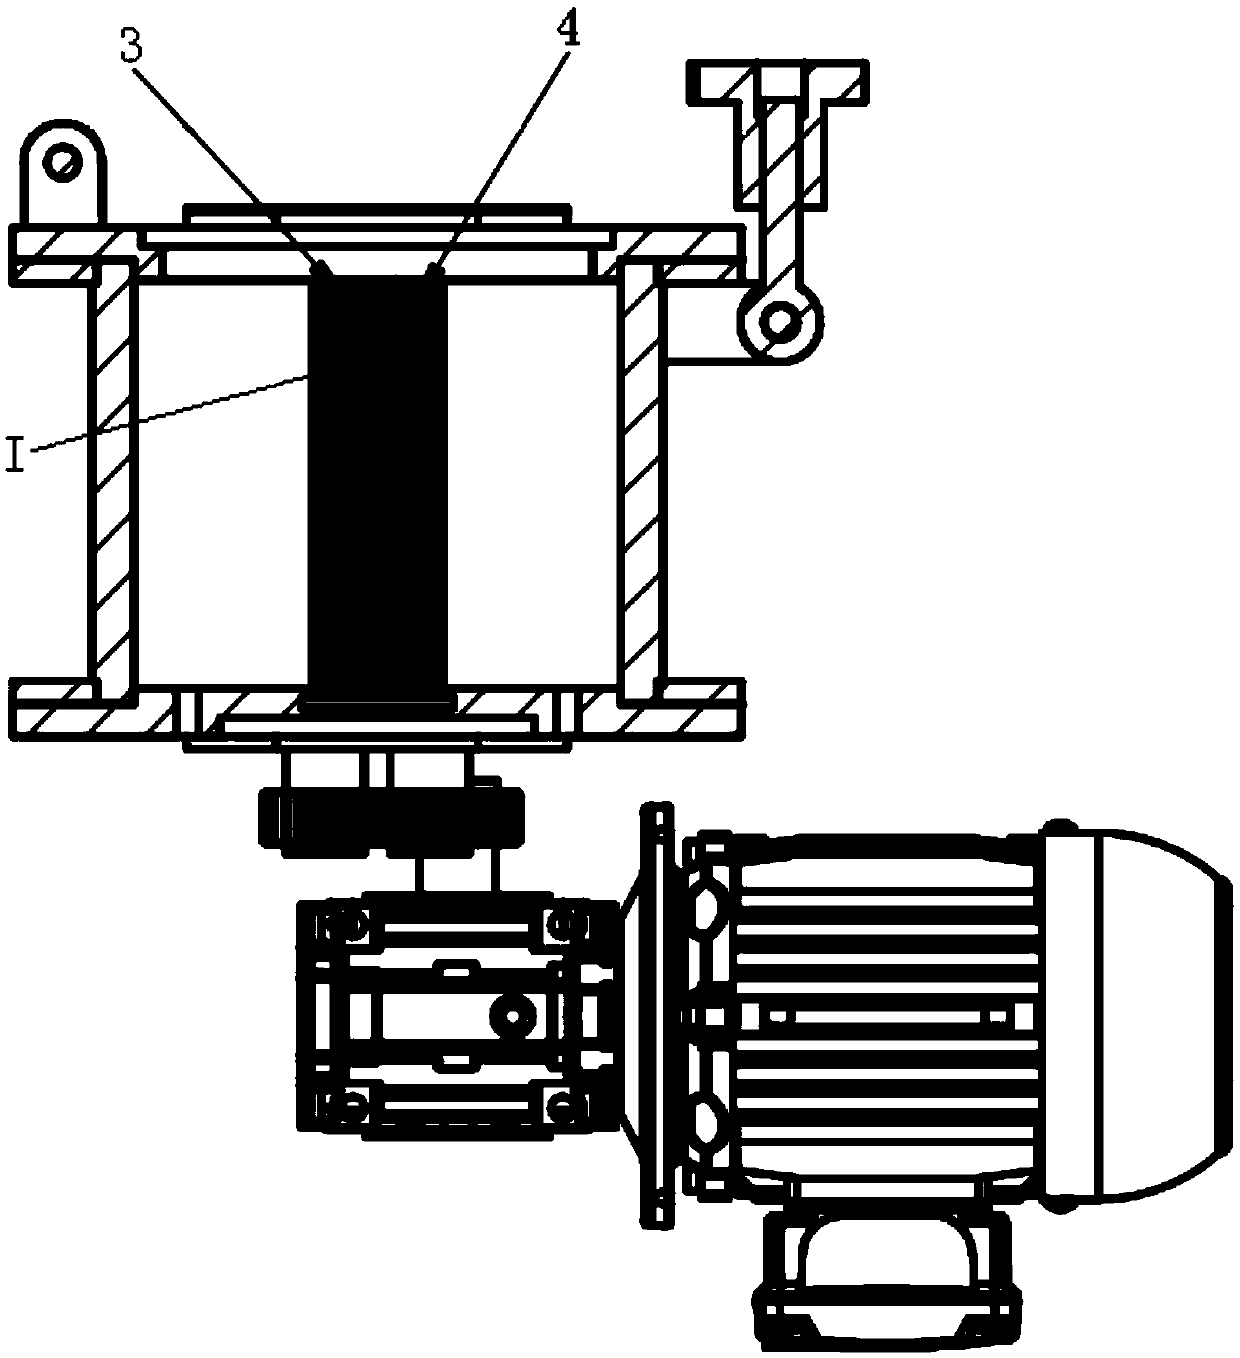 Double-screen-roller discharging mechanism